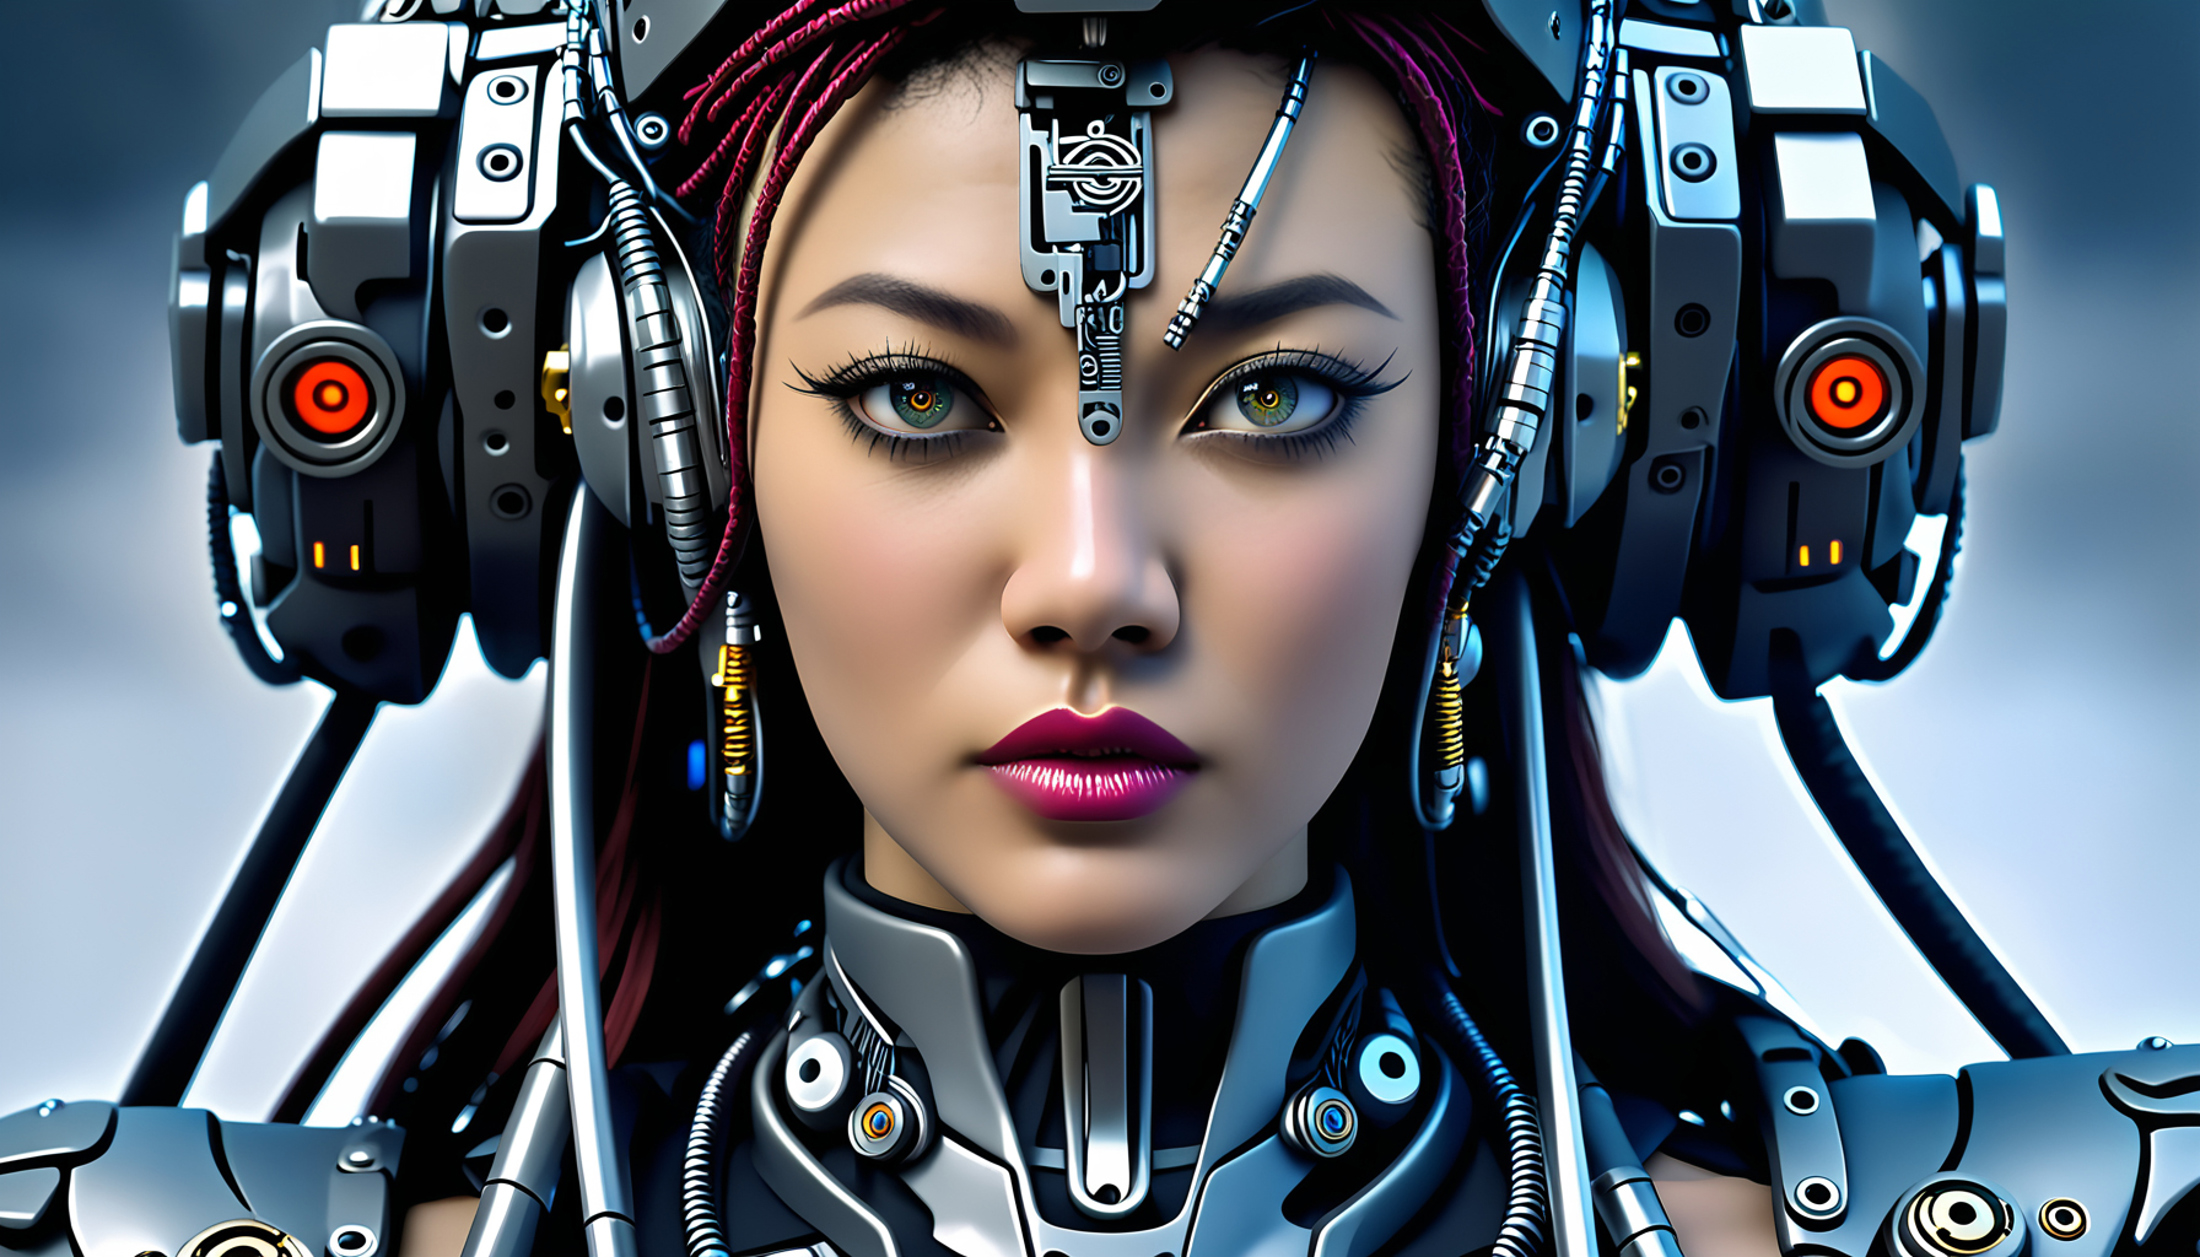 AI model image by SilasAI6609